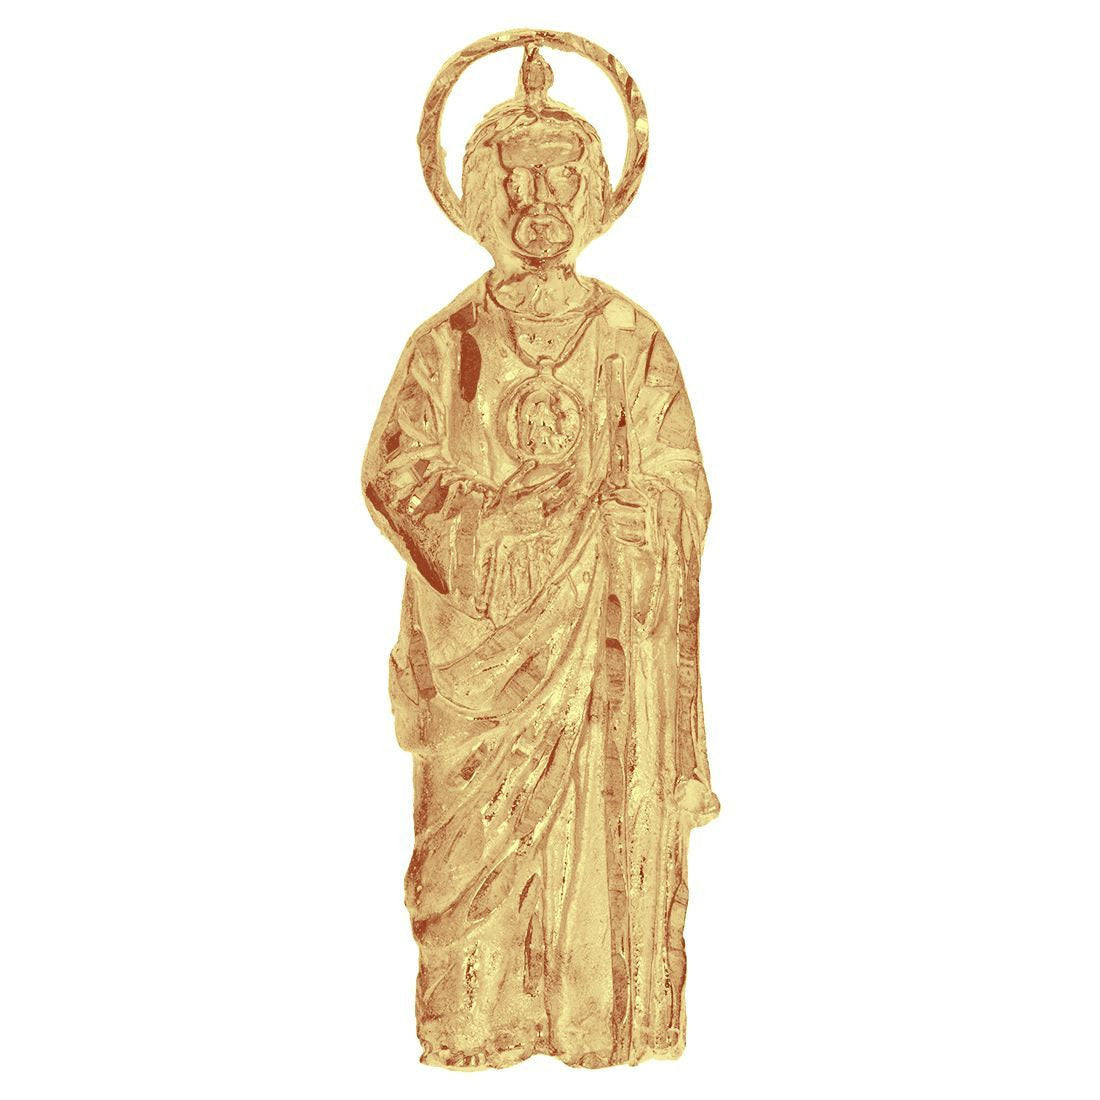 Dije San Judas Tadeo, 5.3 cm alto 1.8 cm Largo, Oro 10k - Infiniti Joyas